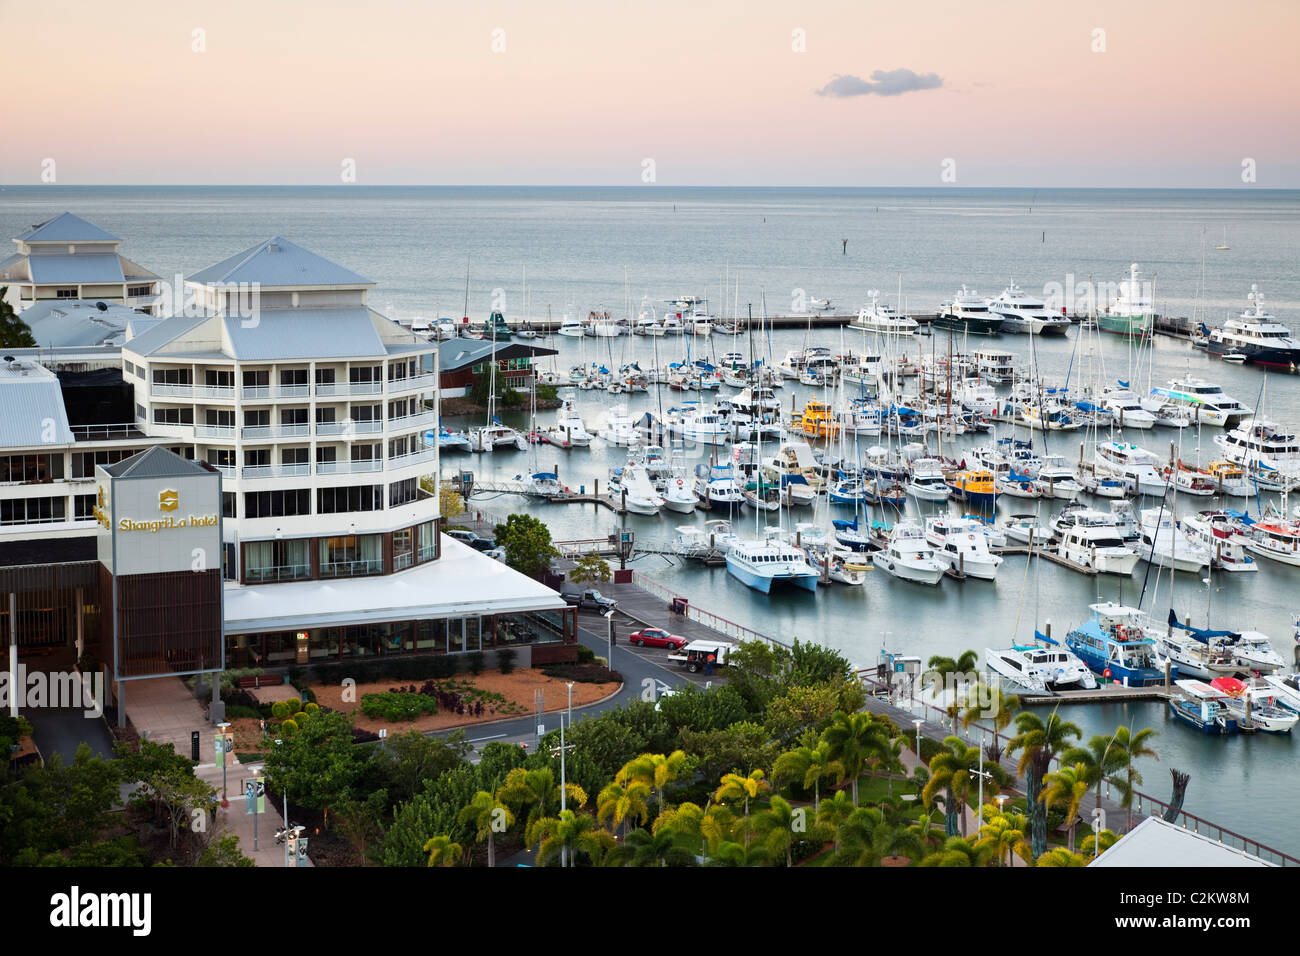 L'hôtel Shangri-La et Marlin Marina au crépuscule. Cairns, Queensland, Australie Banque D'Images